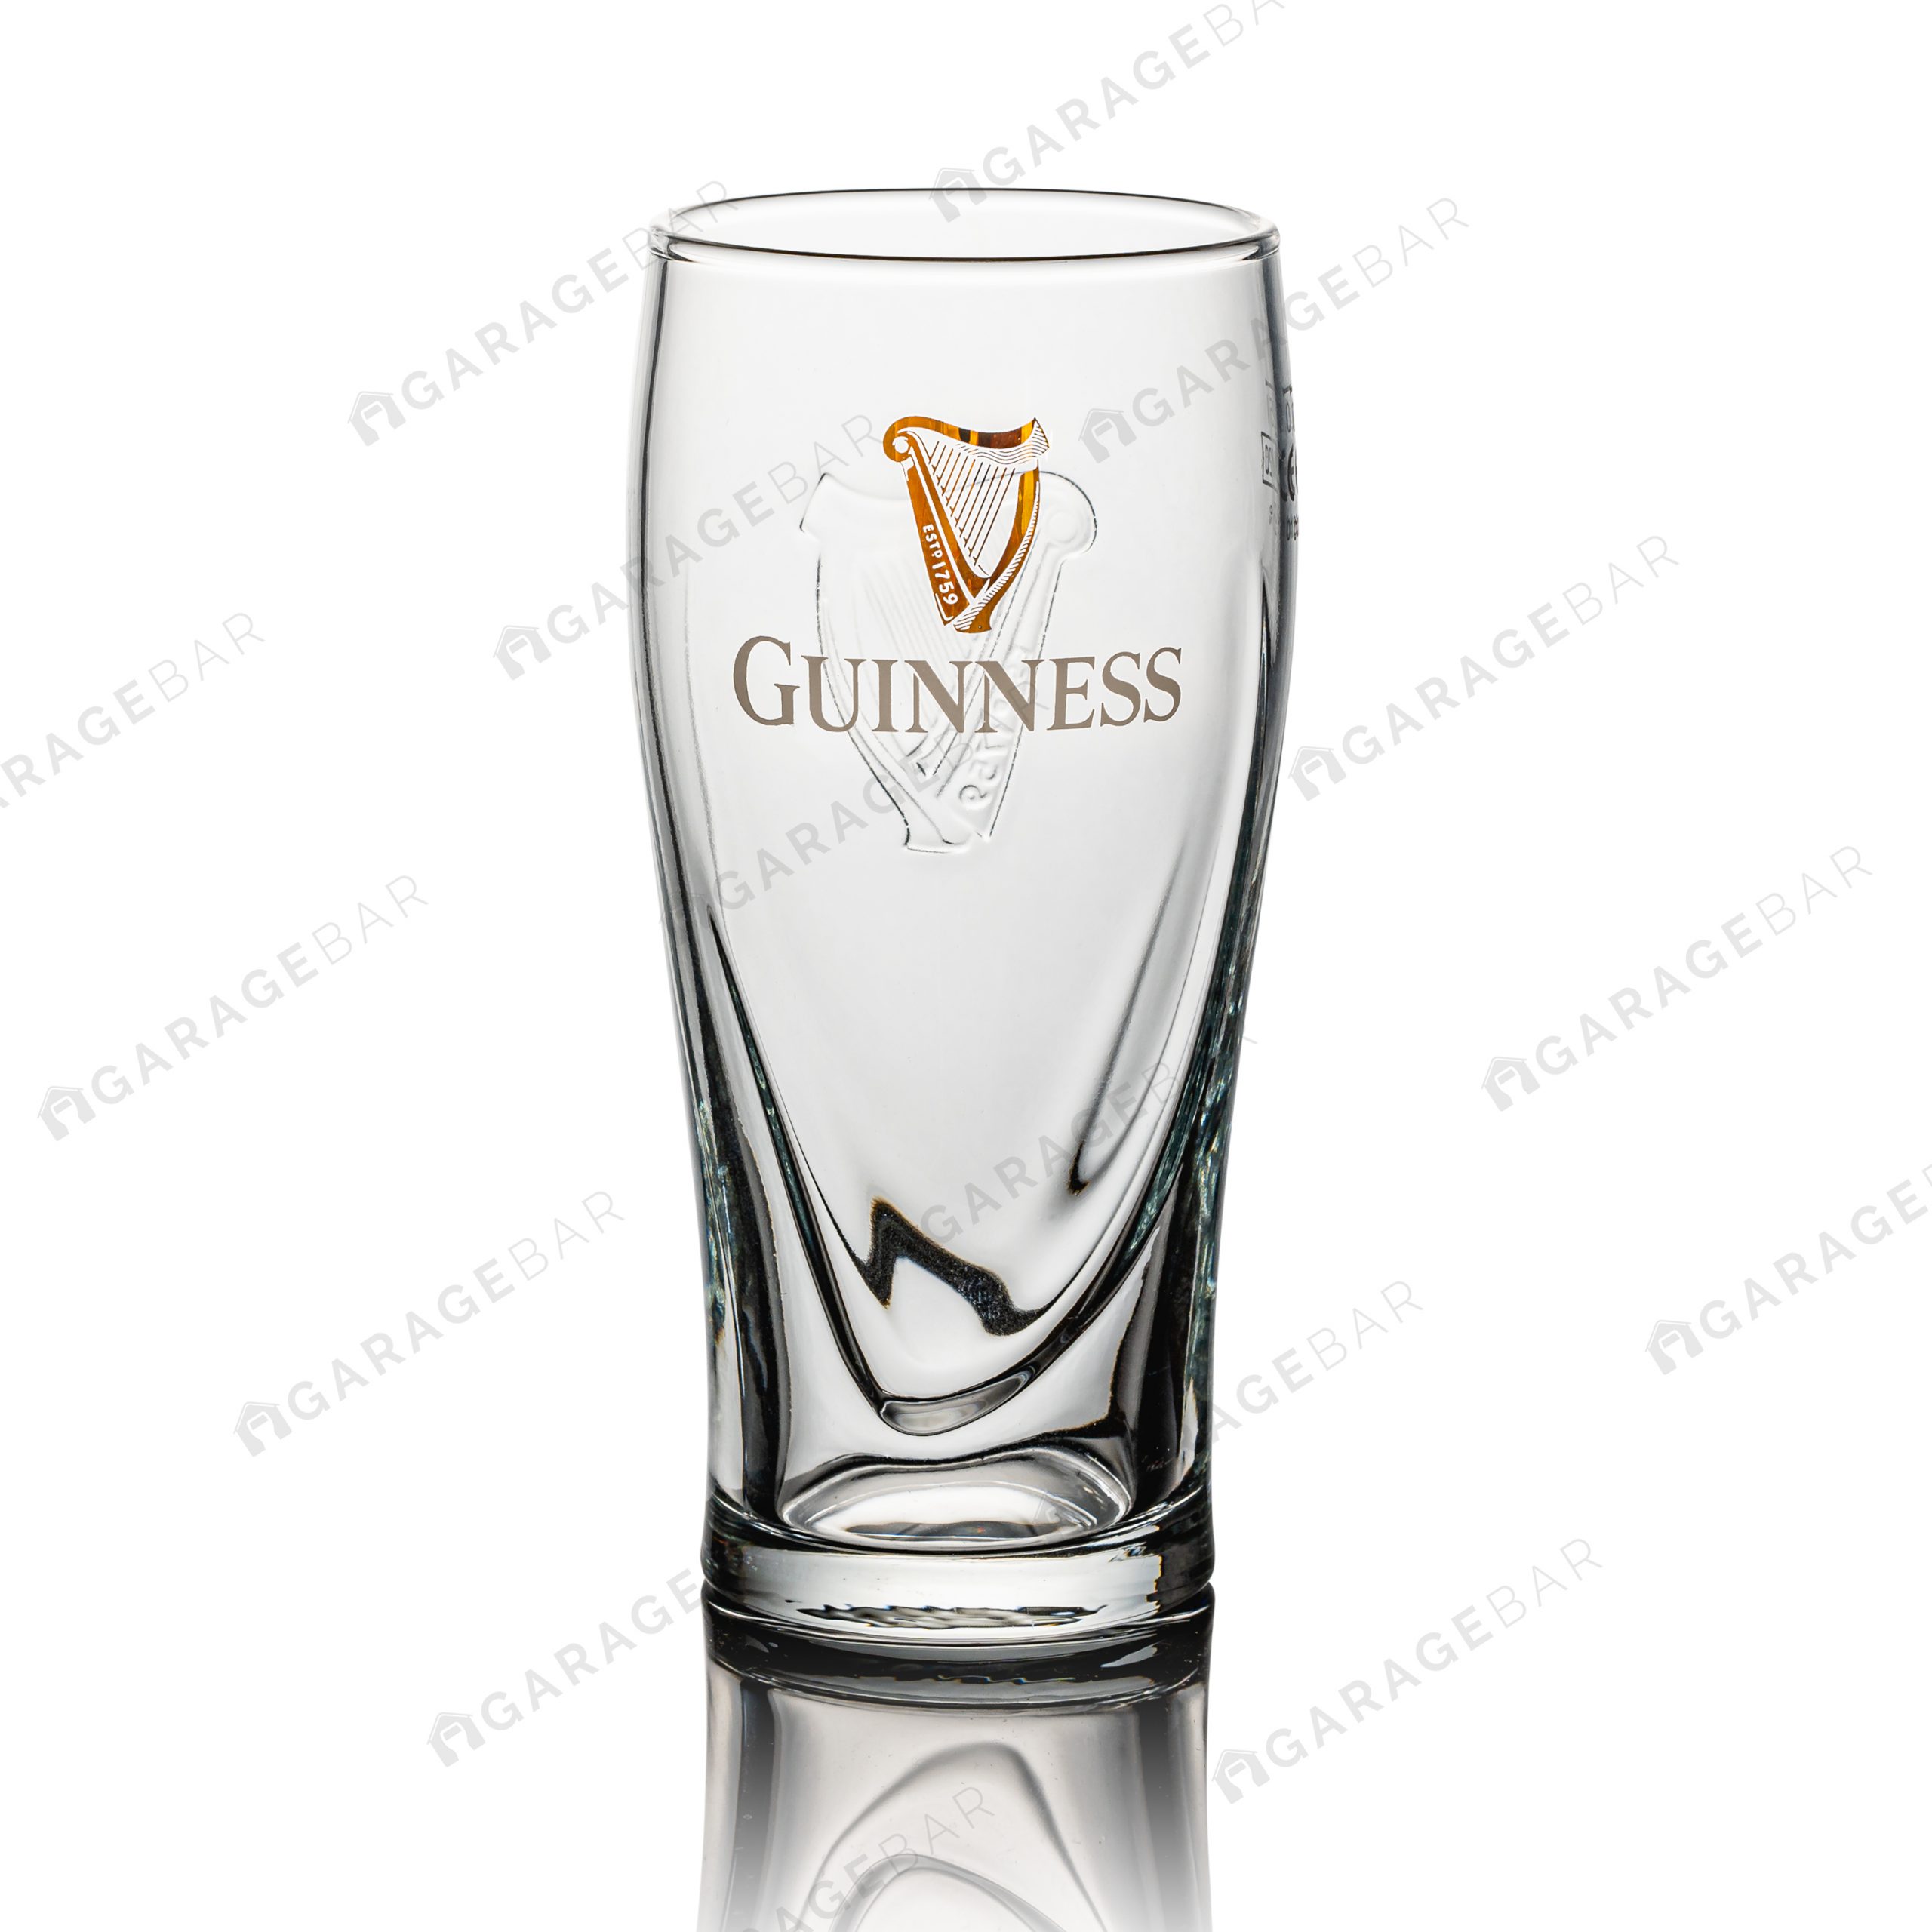 Guinness Harp Half Pint Beer Glass